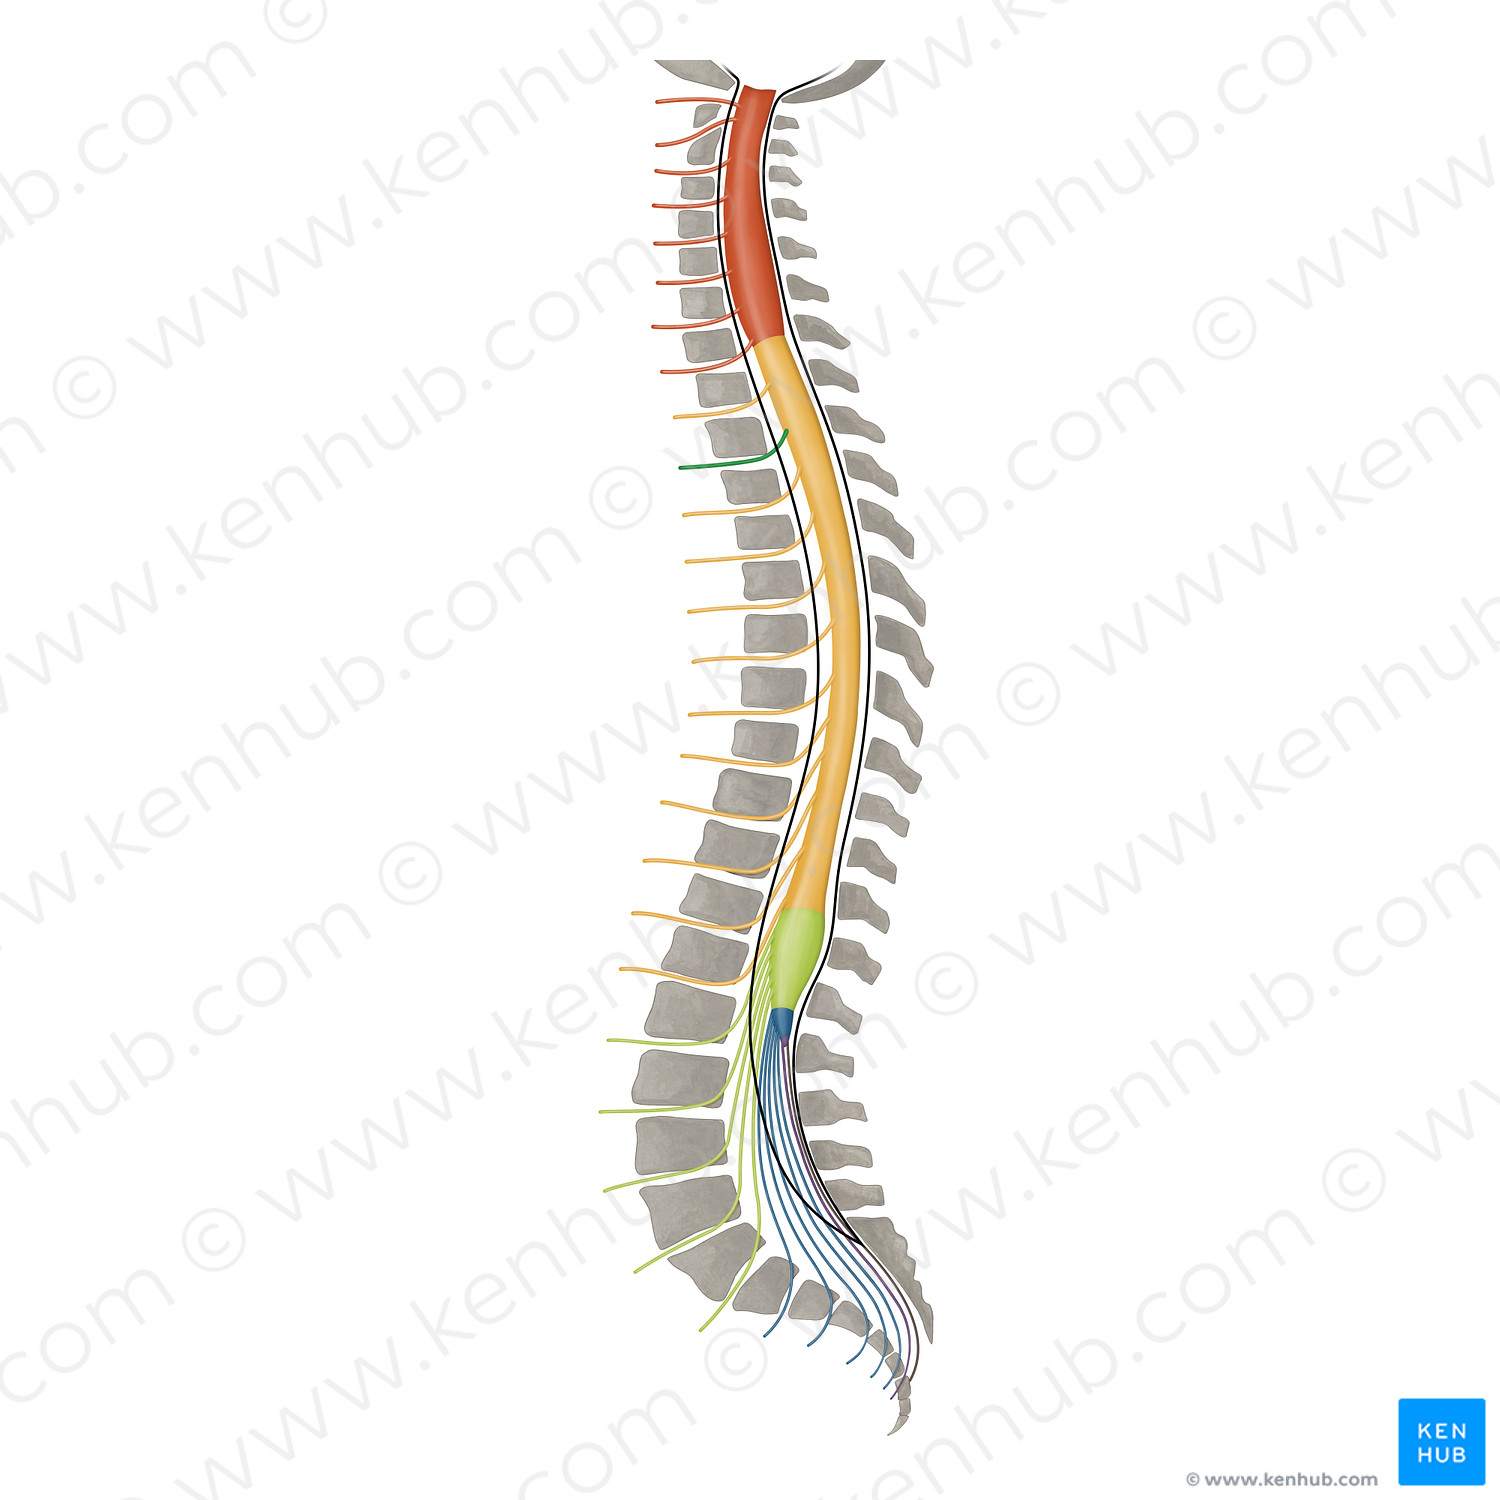 Spinal nerve T2 (#16424)